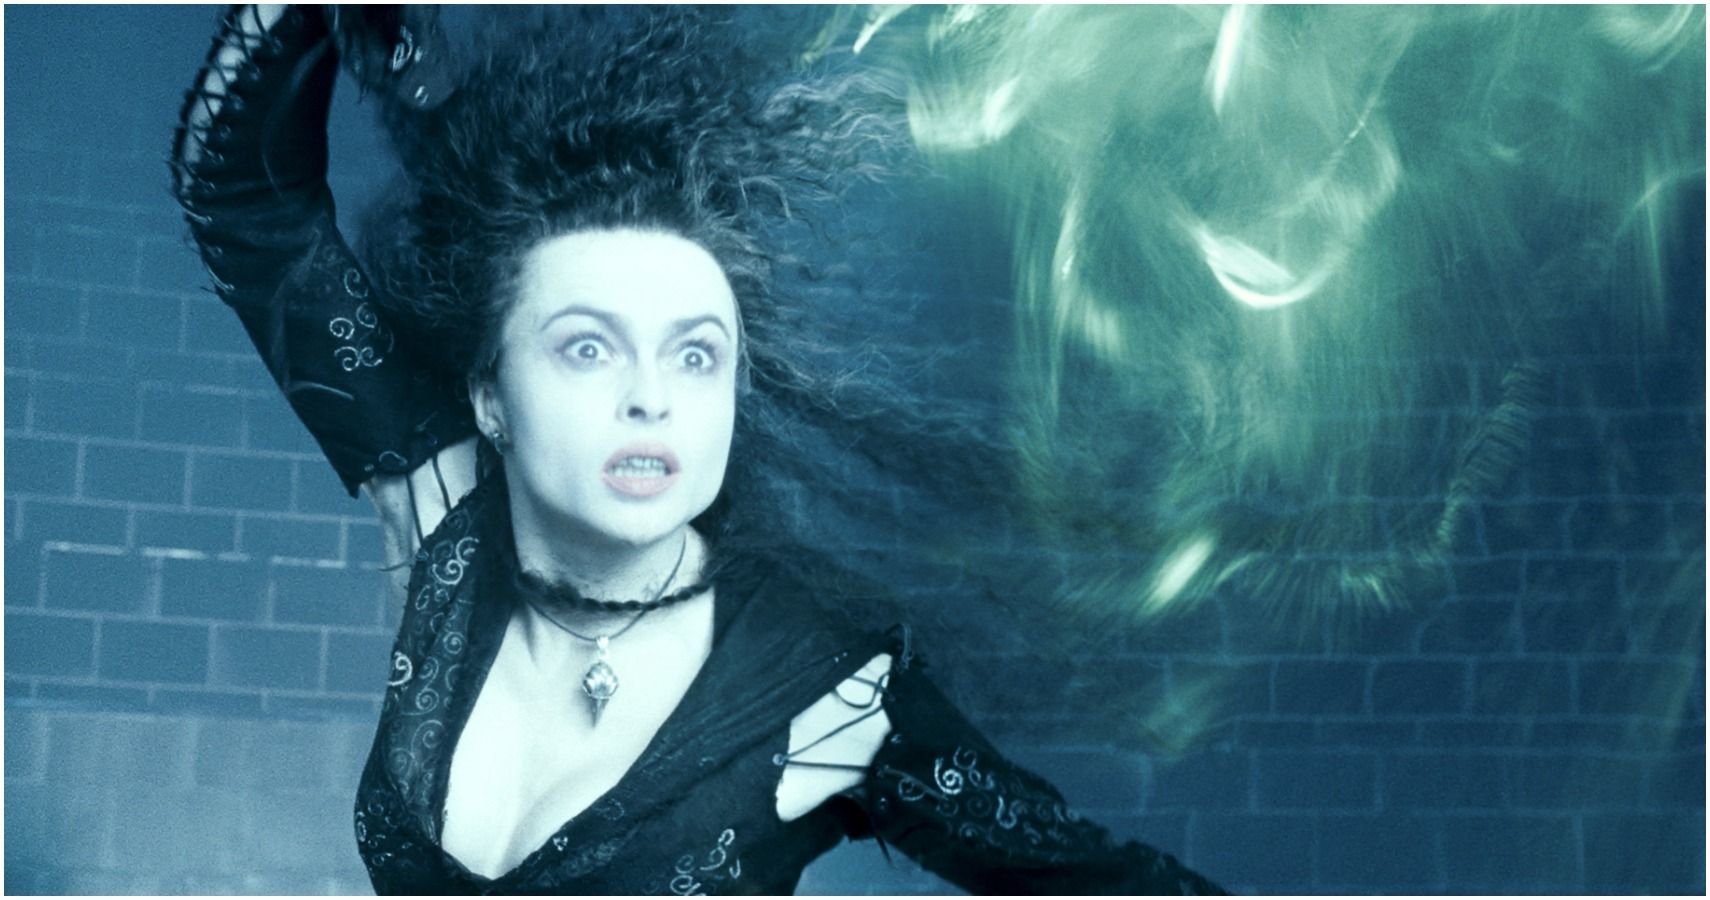 Bellatrix casting a curse in Harry Potter